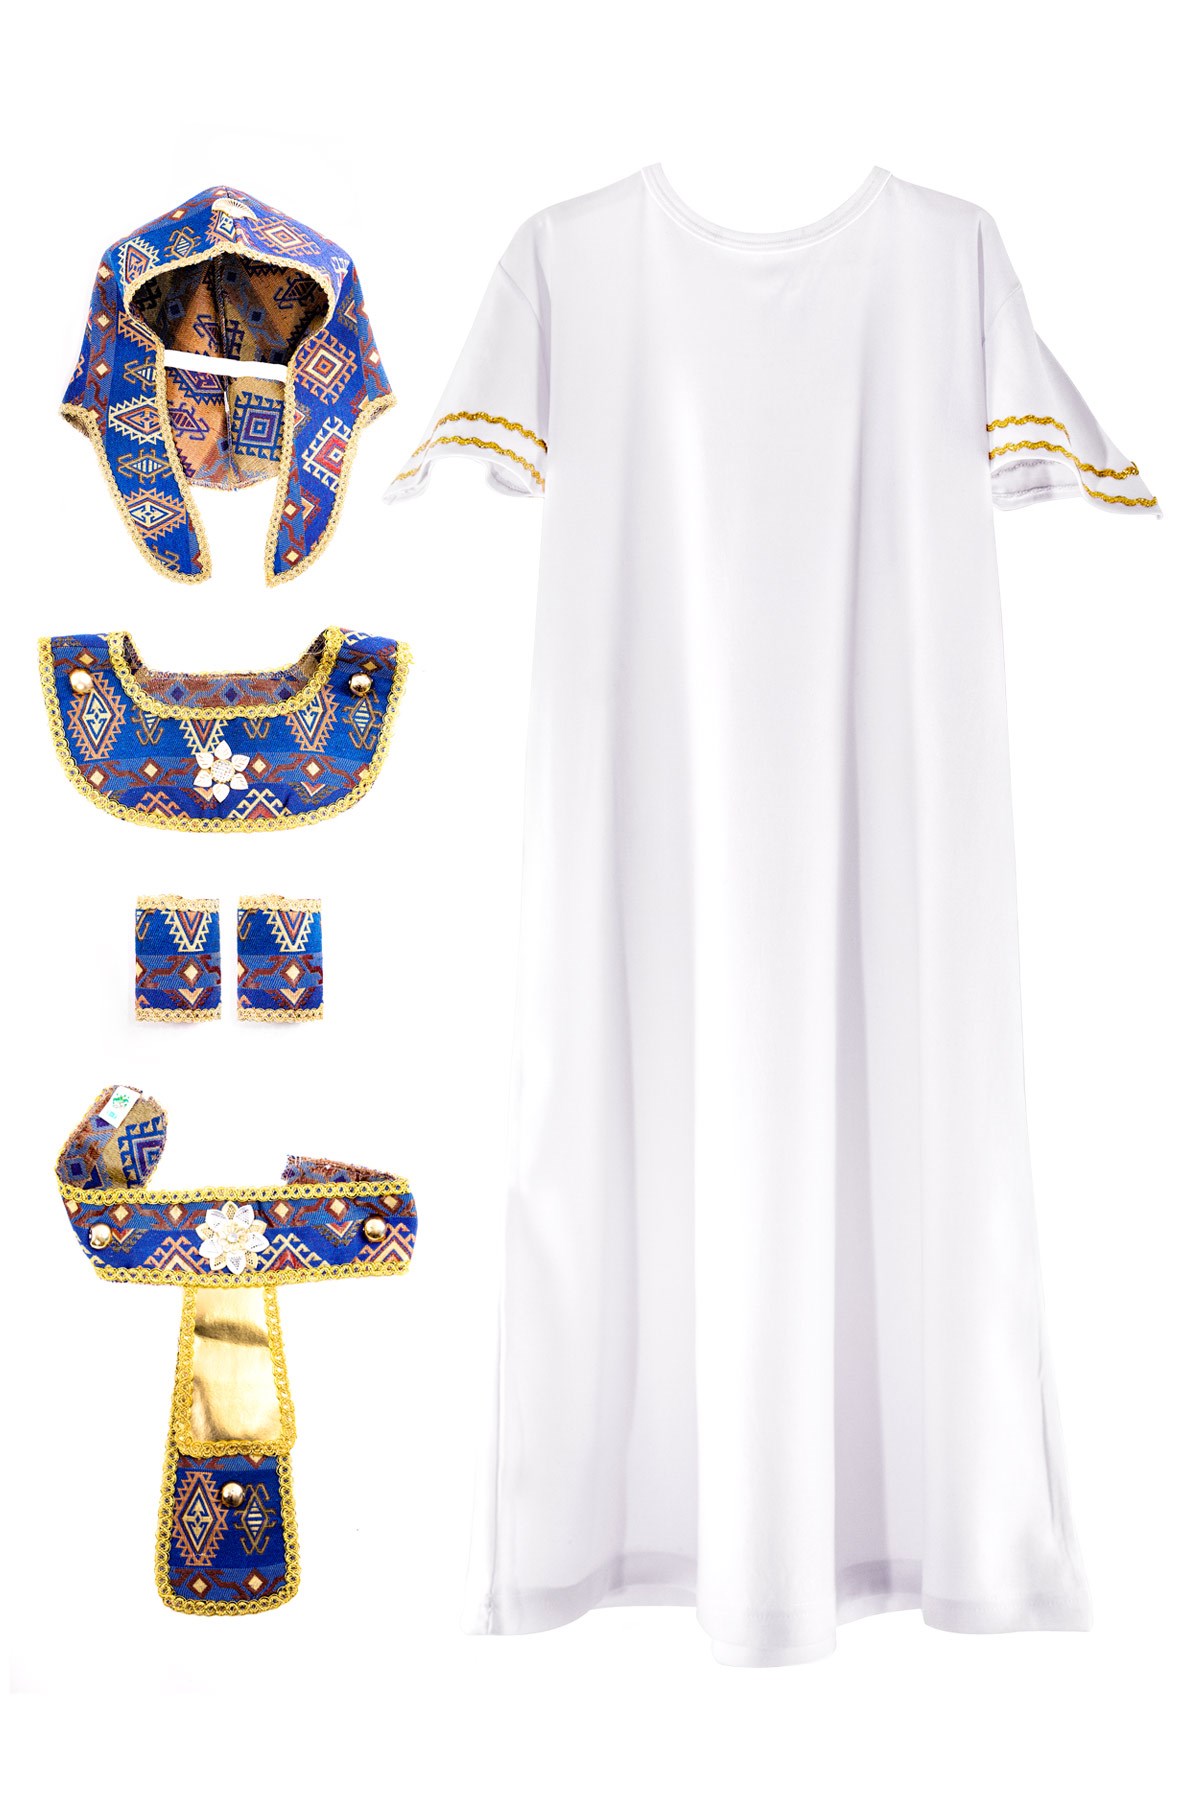 Mısır Kralı Kostümü | Tarihsel Kostümler | Çocuk Kostümleri - Oulabi Mir